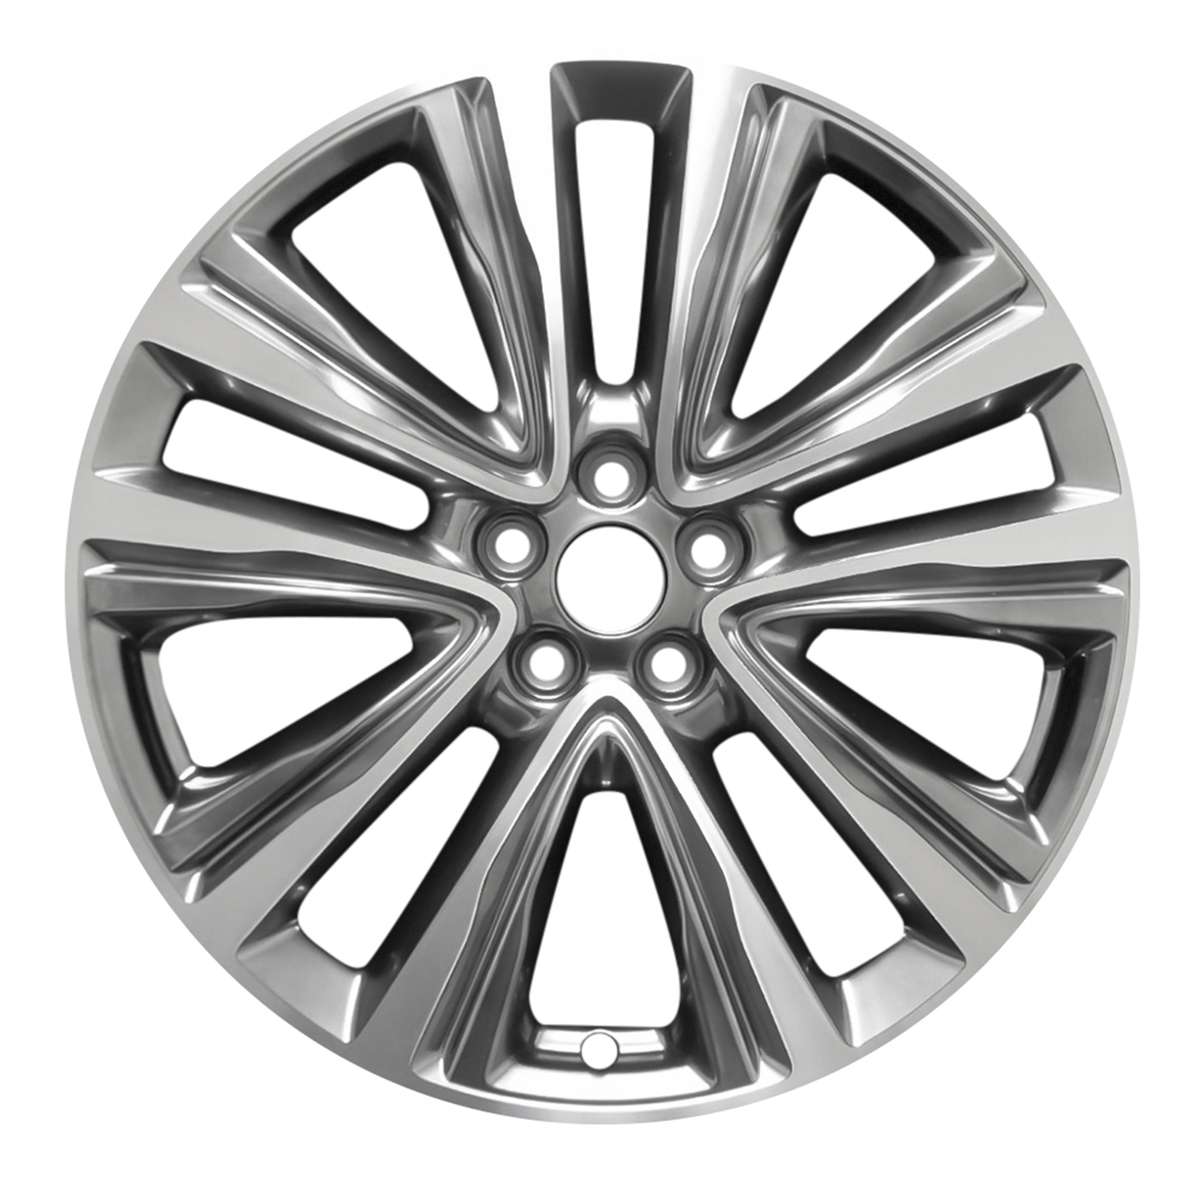 2016 Lincoln MKX 20" OEM Wheel Rim W10074MLH